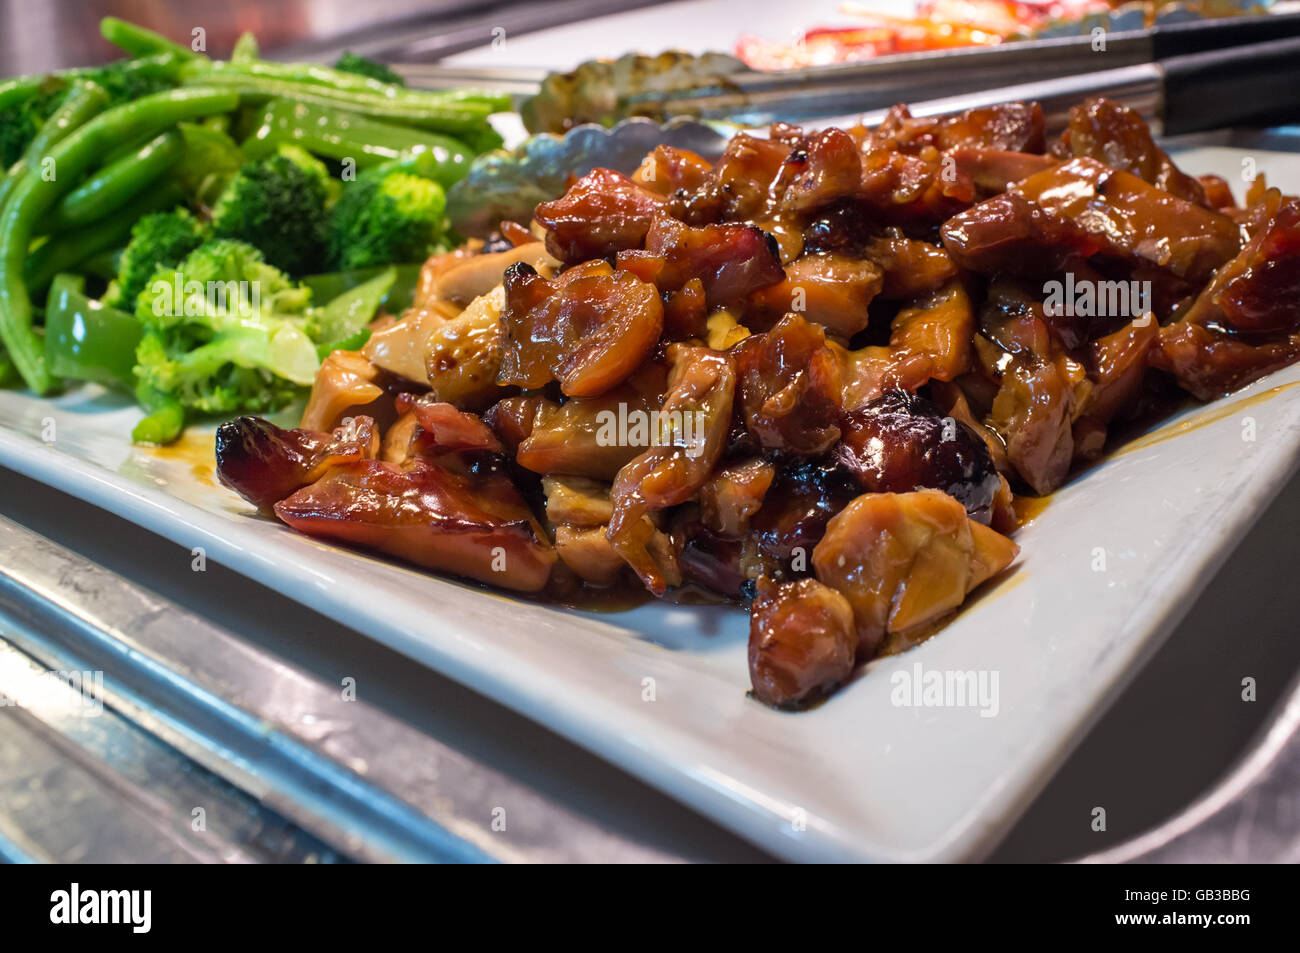 Autoservicio de buffet de comida china pollo teriyaki con brócoli  Fotografía de stock - Alamy